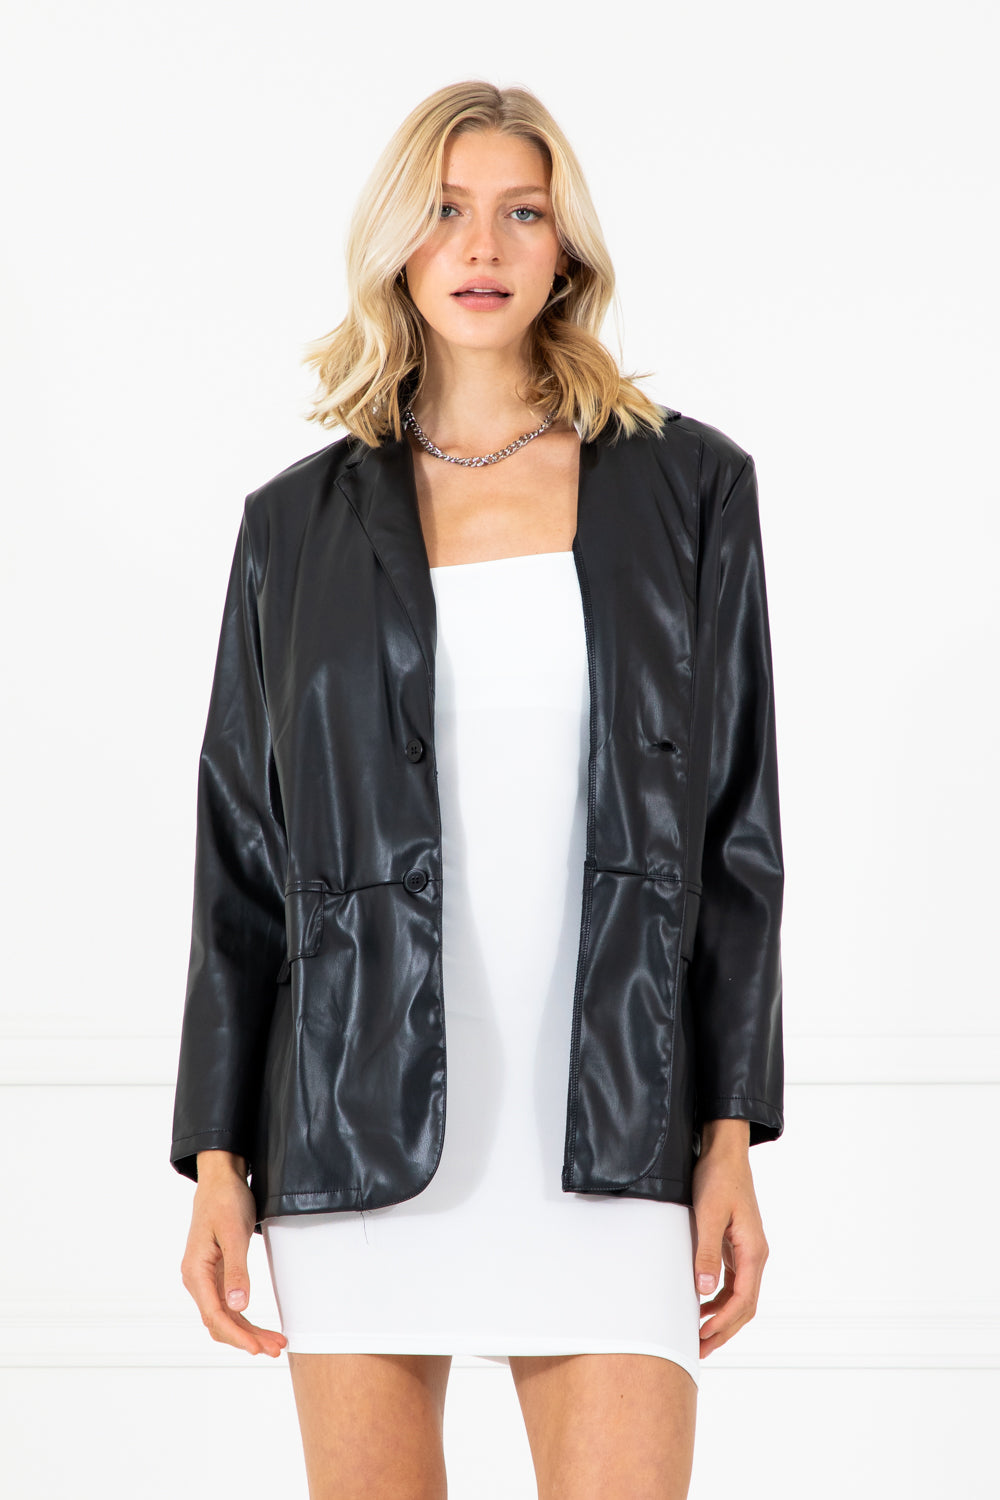 Maude Black Faux Leather Oversized Jacket Blazer